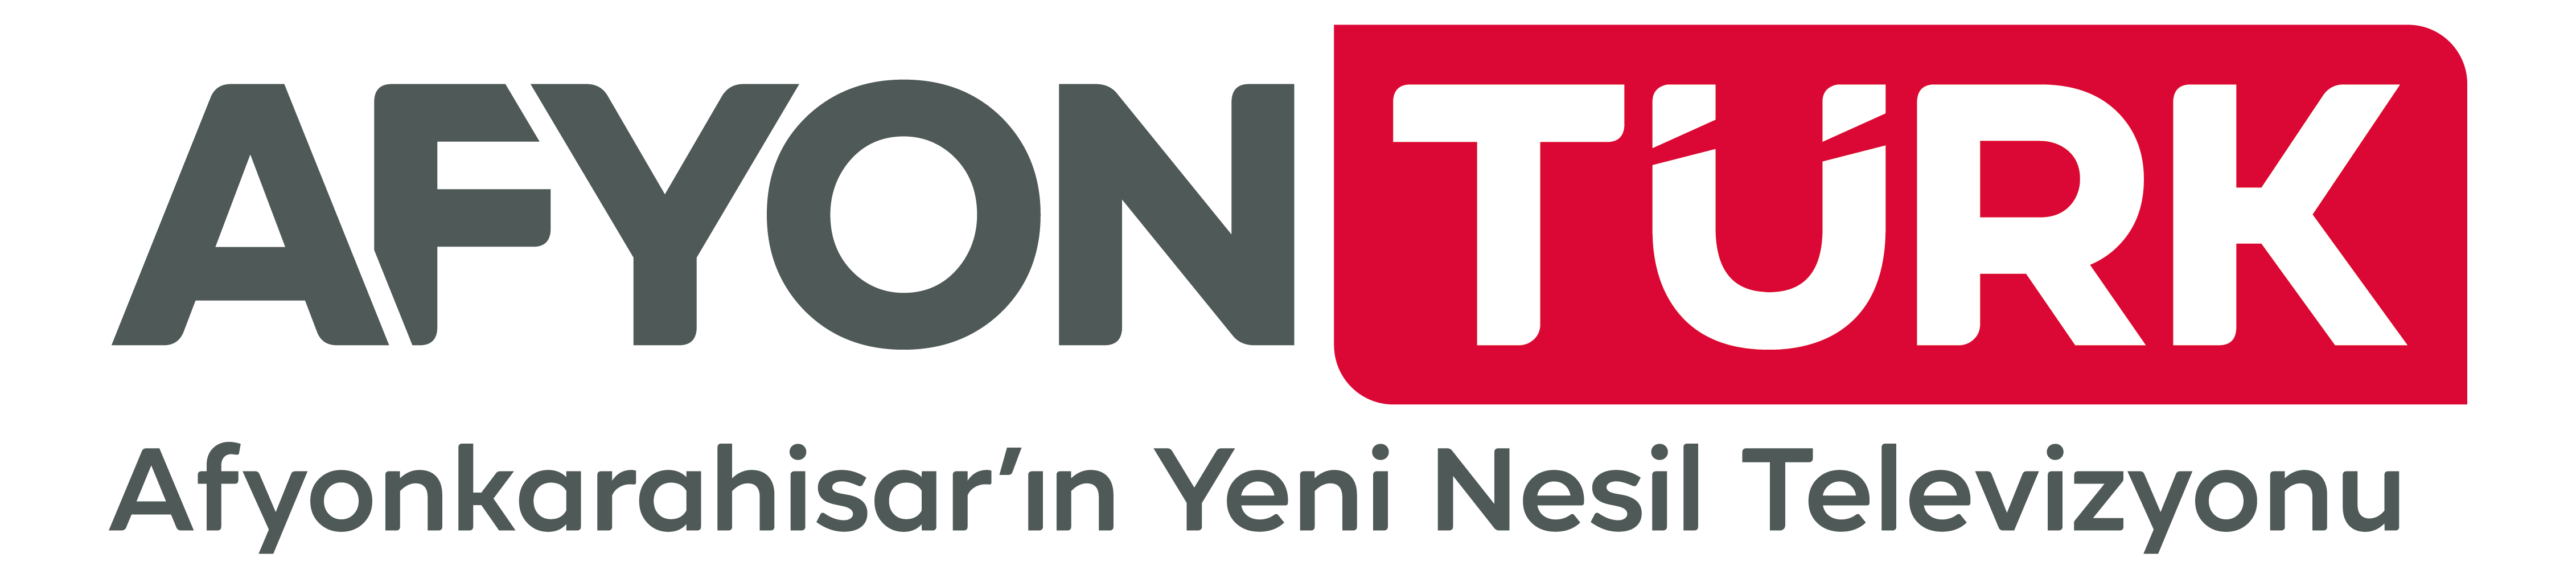 AfyonTürk Televizyonu